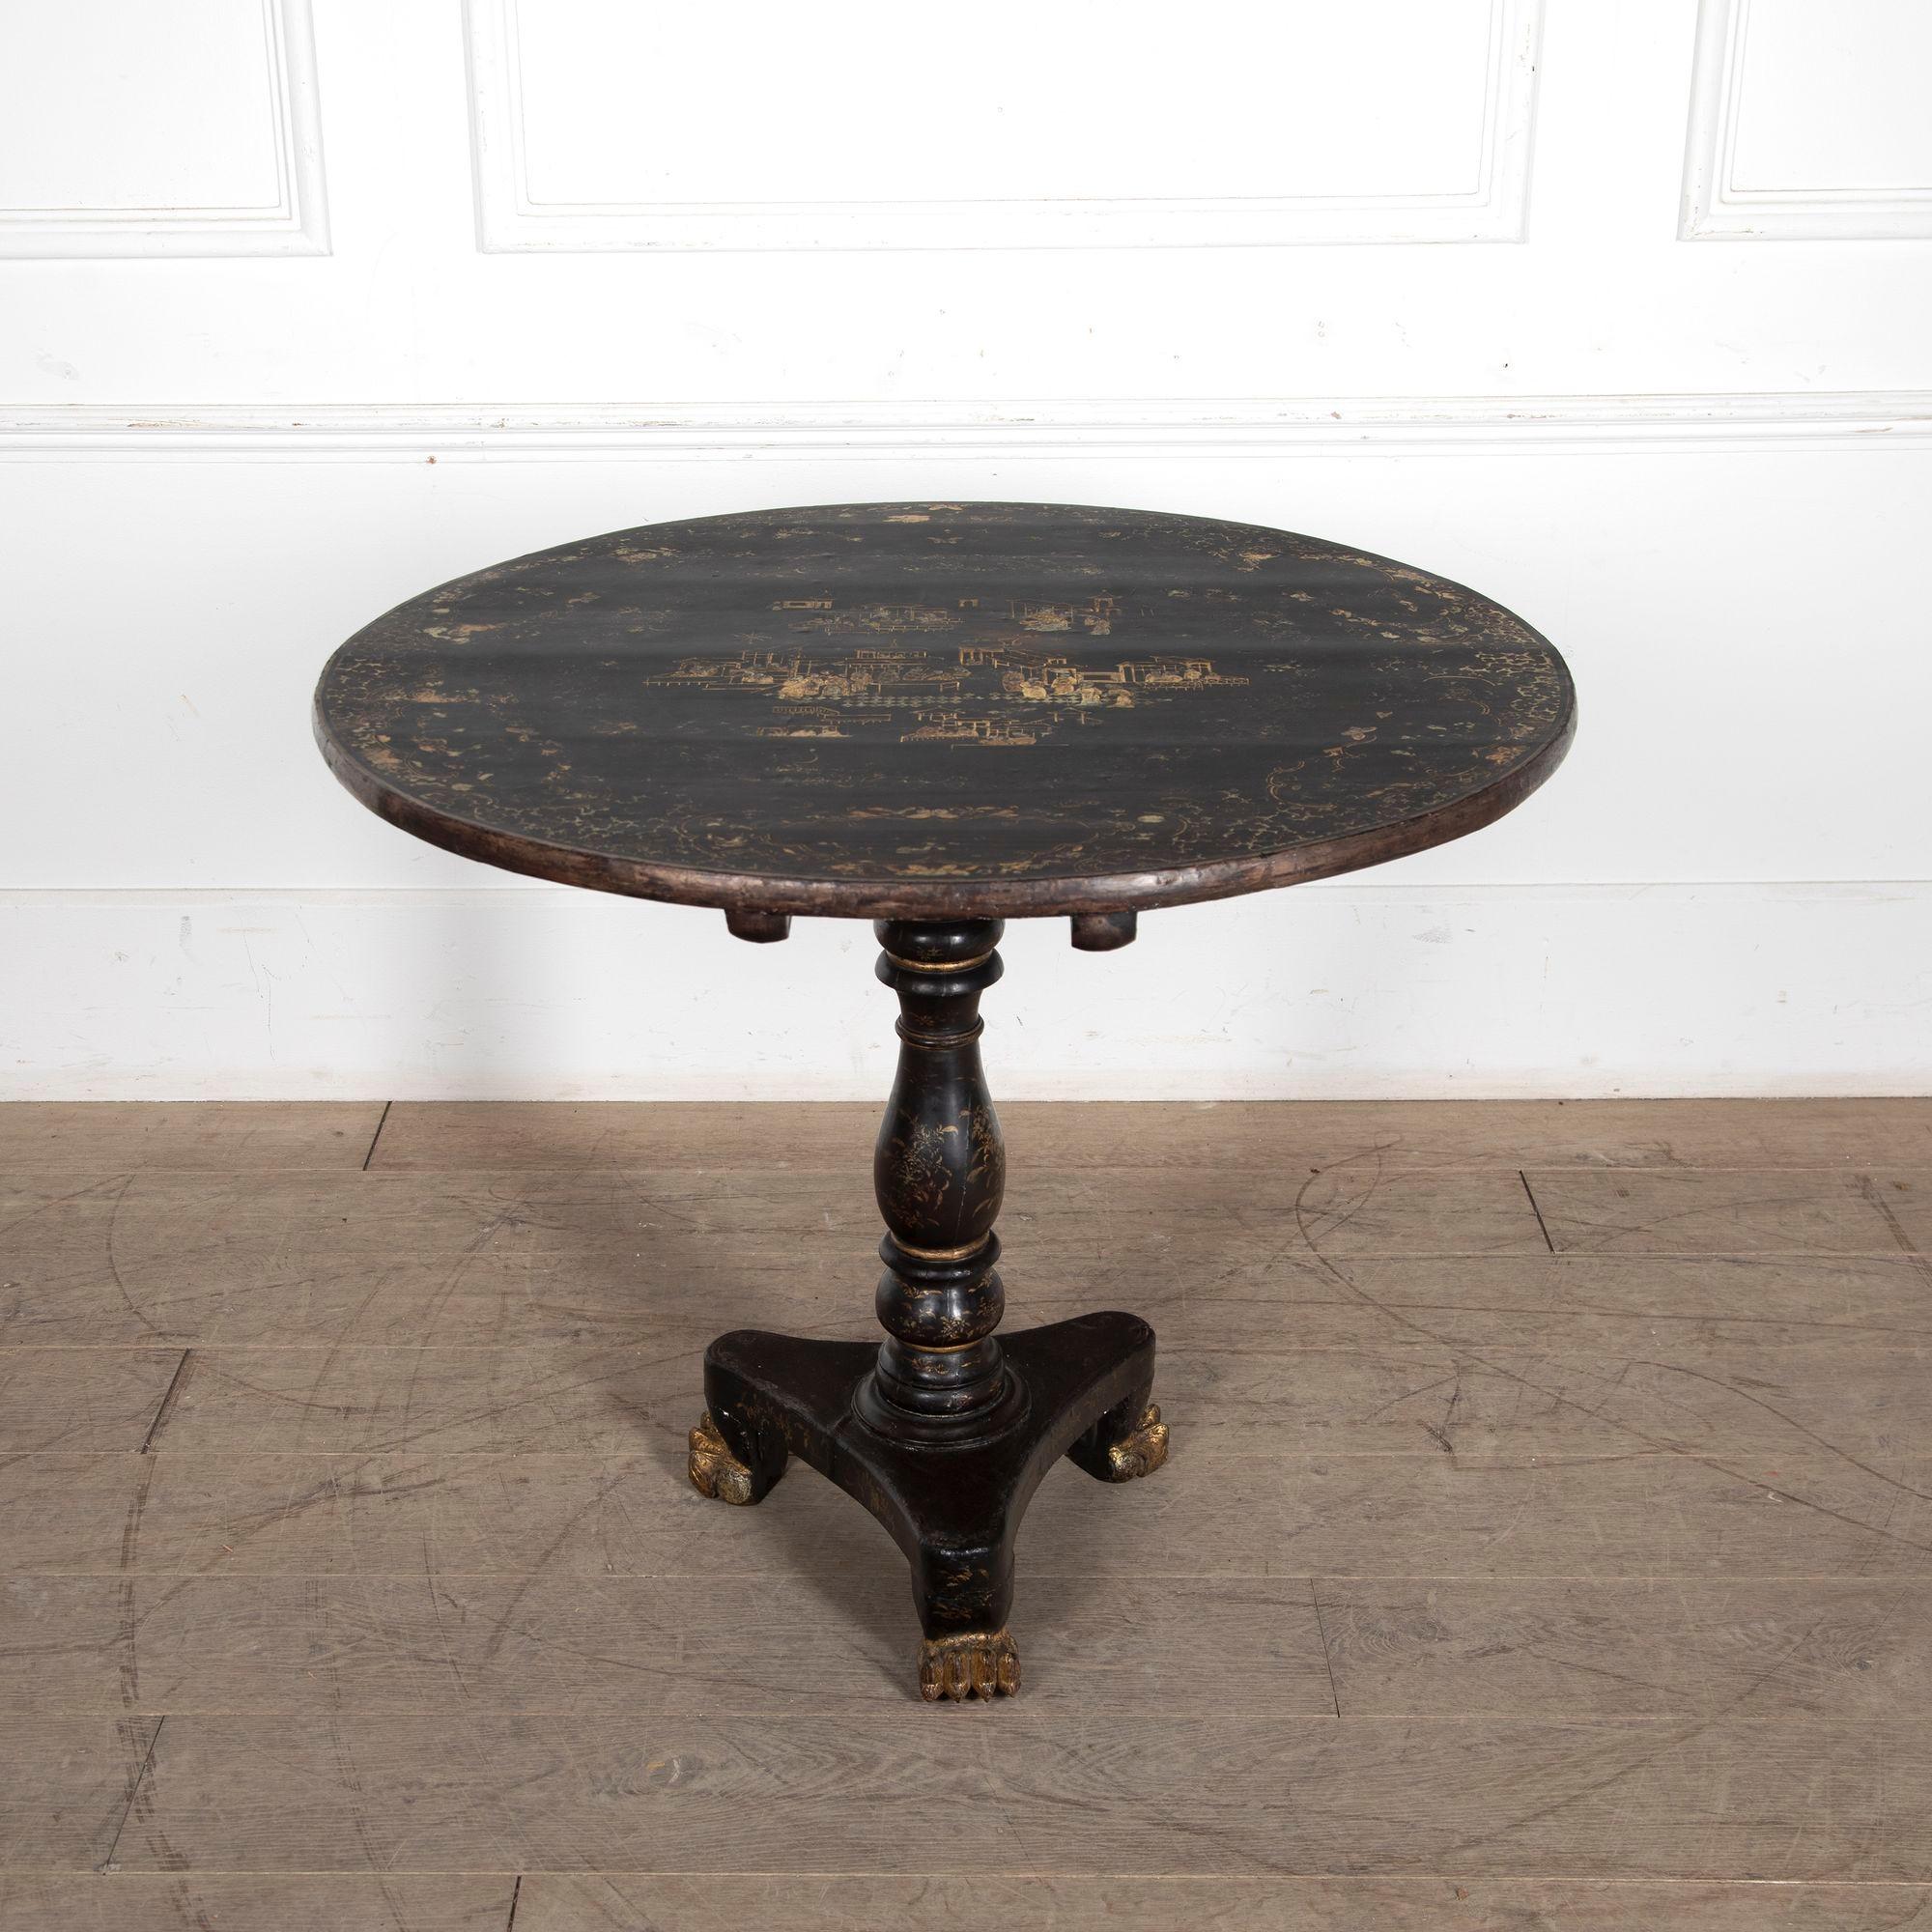 Exquise table d'appoint Regency laquée, à la décoration chinoise originale.
A.I.C. C.C.